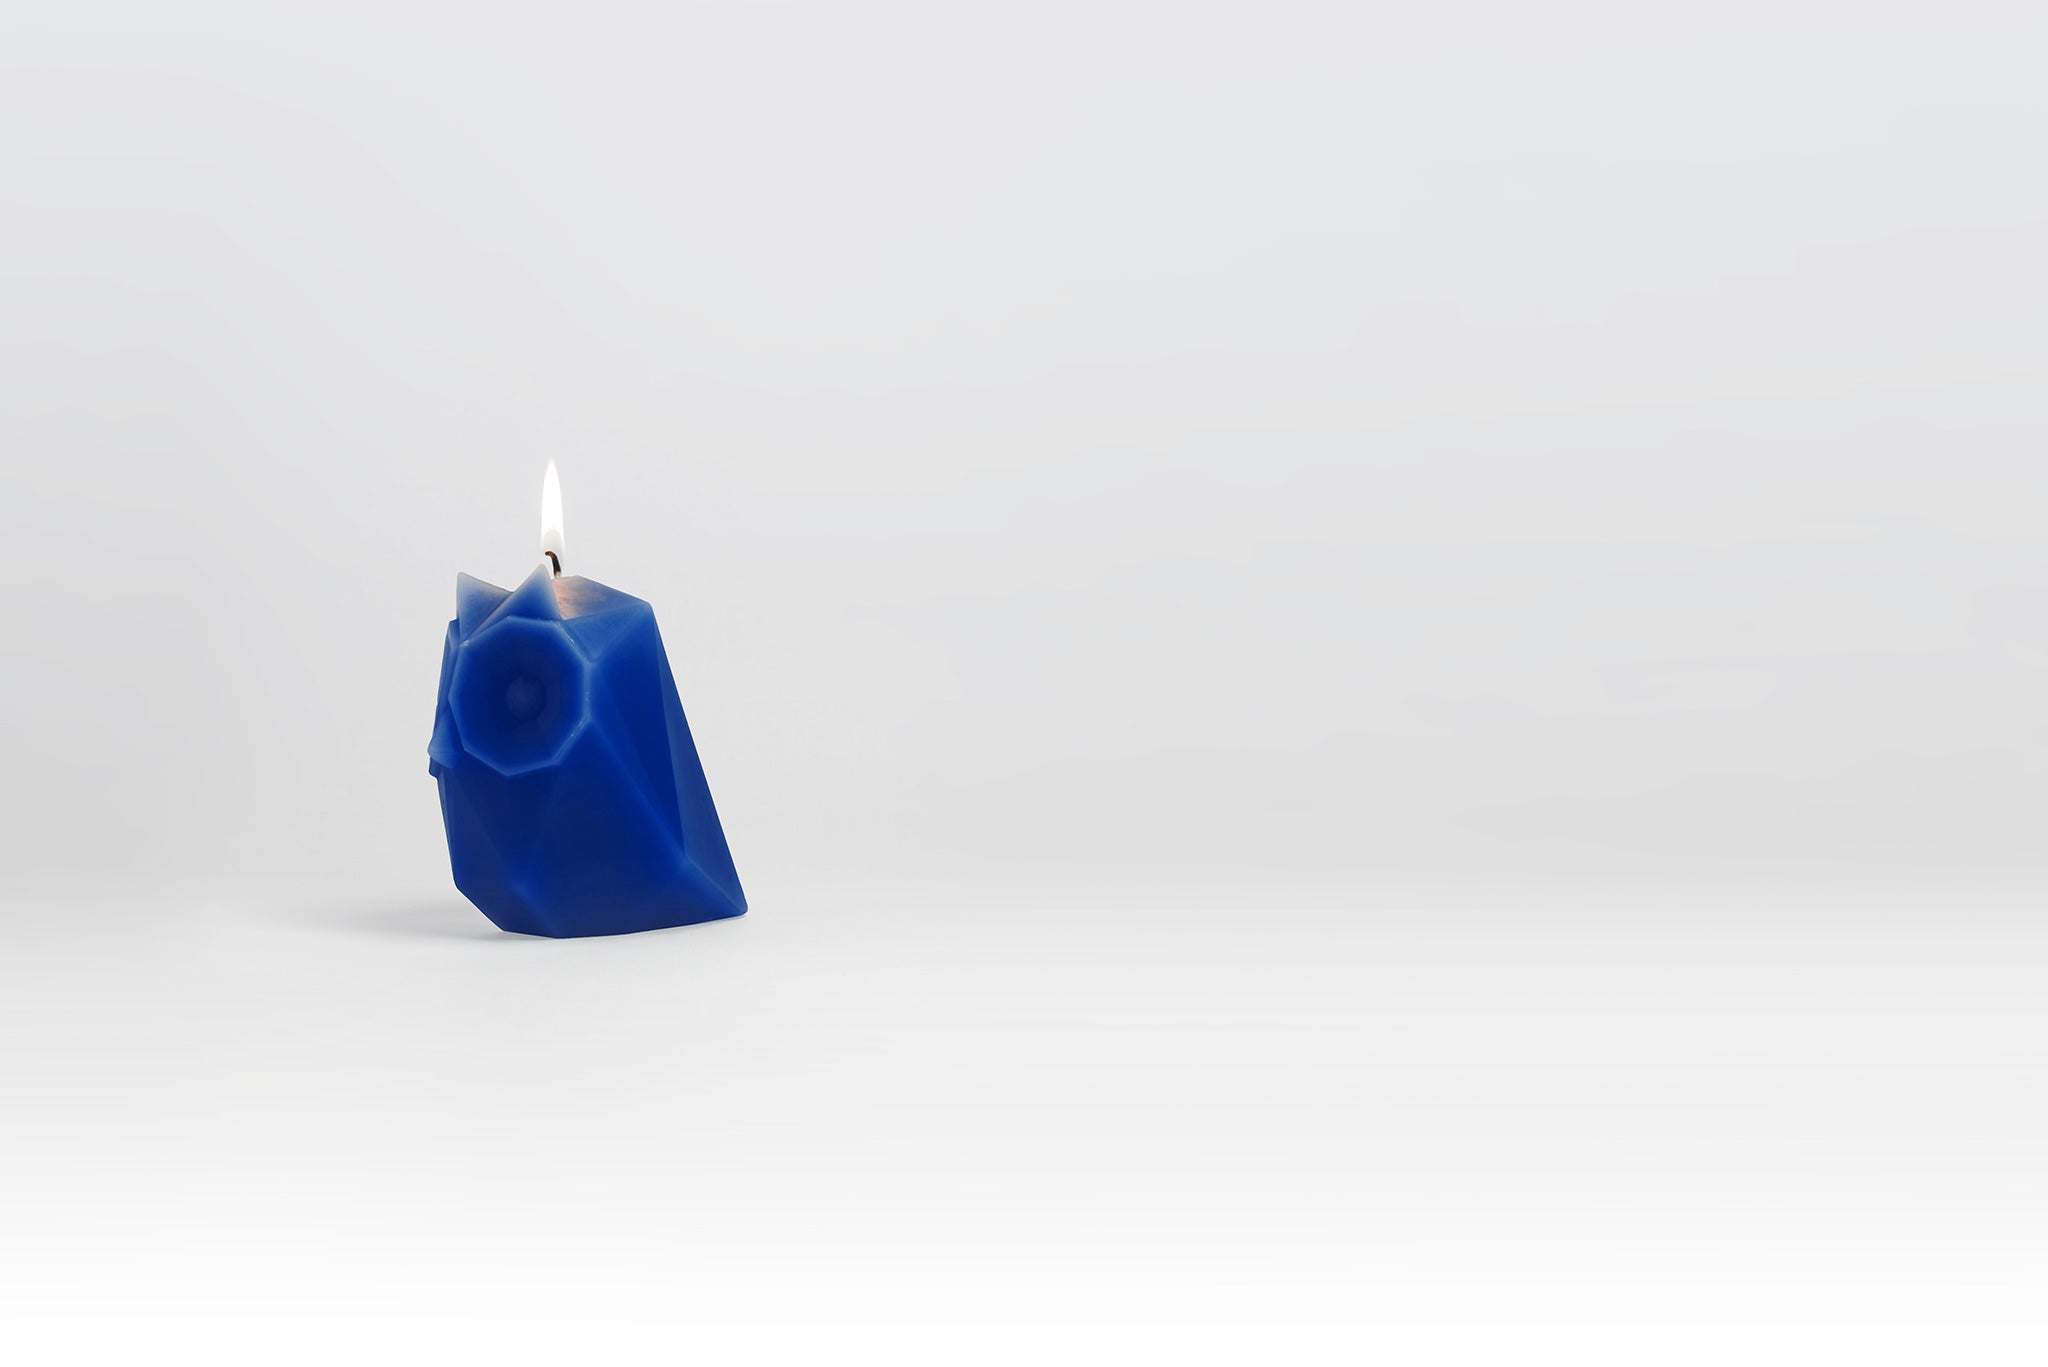 PyroPet Ugla Owl Candle - Electric Blue